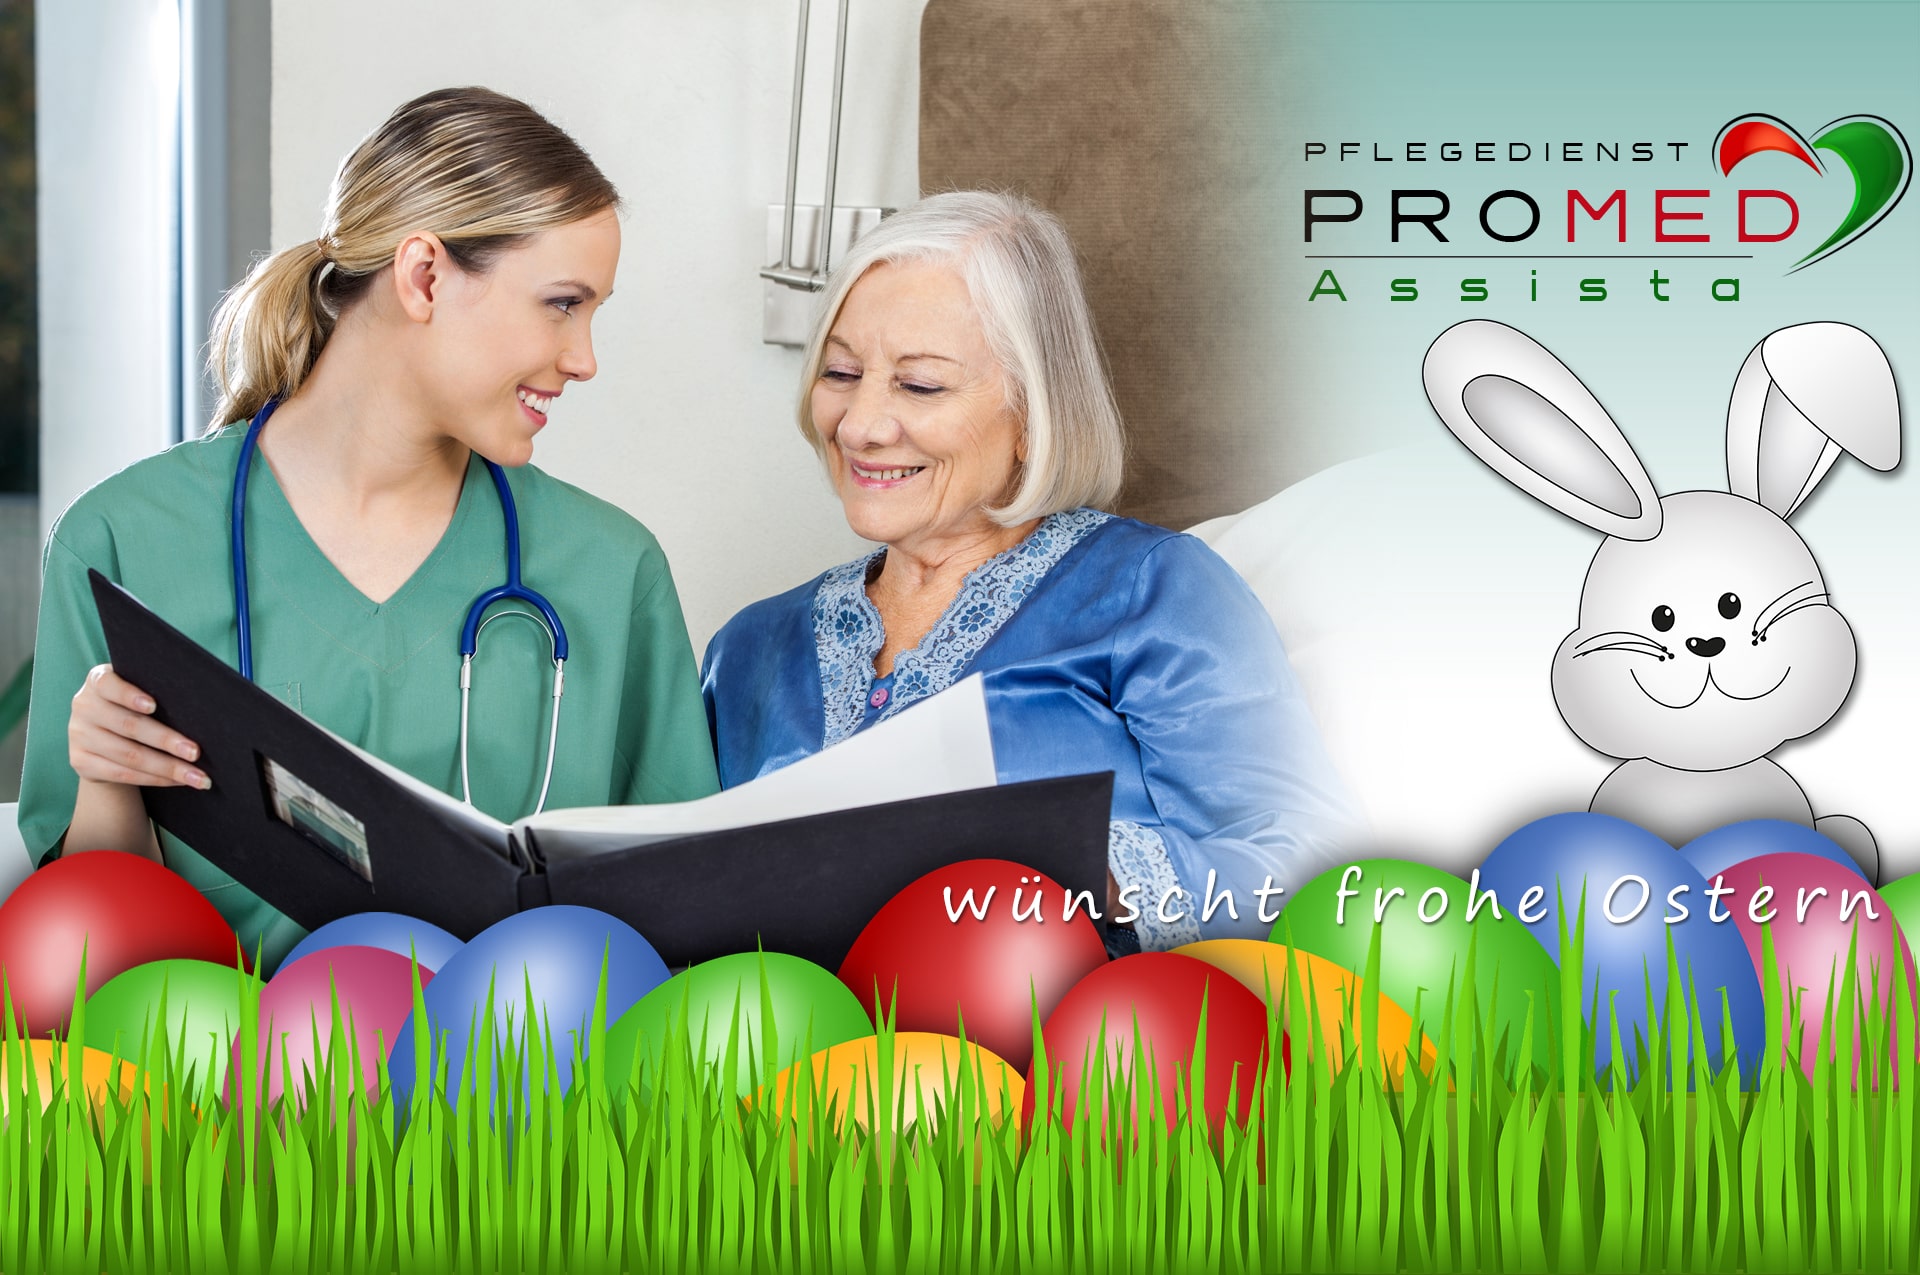 Pflegedienst PROMED Assista - Pflege in den eigenen vier Wänden wünscht frohe Ostern